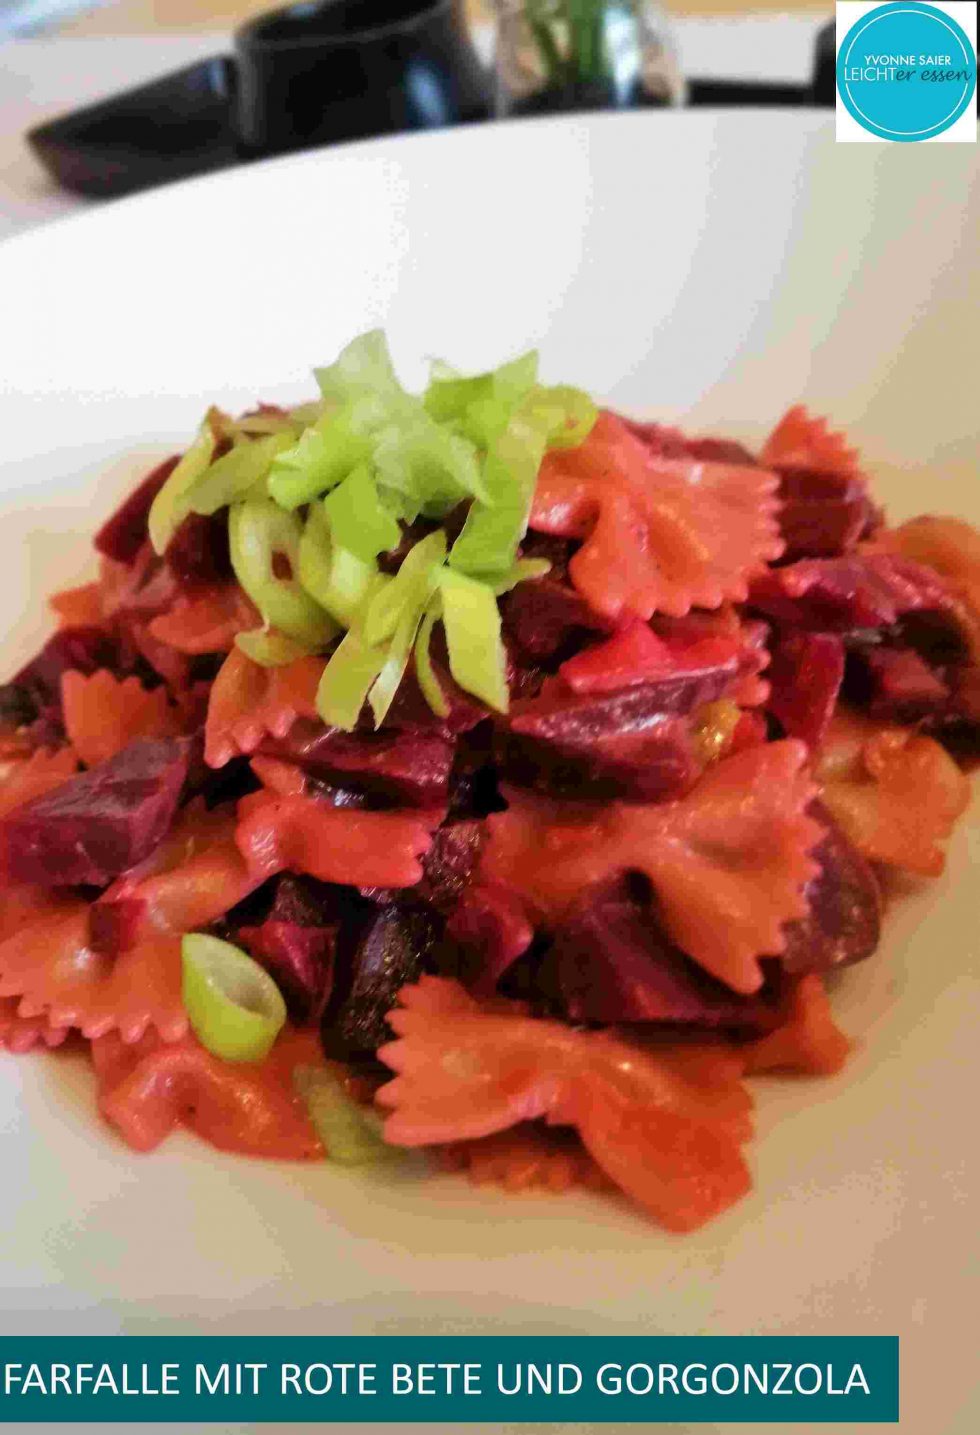 Farfalle mit Rote Bete und Gorgonzola - LEICHTer essen Yvonne Saier